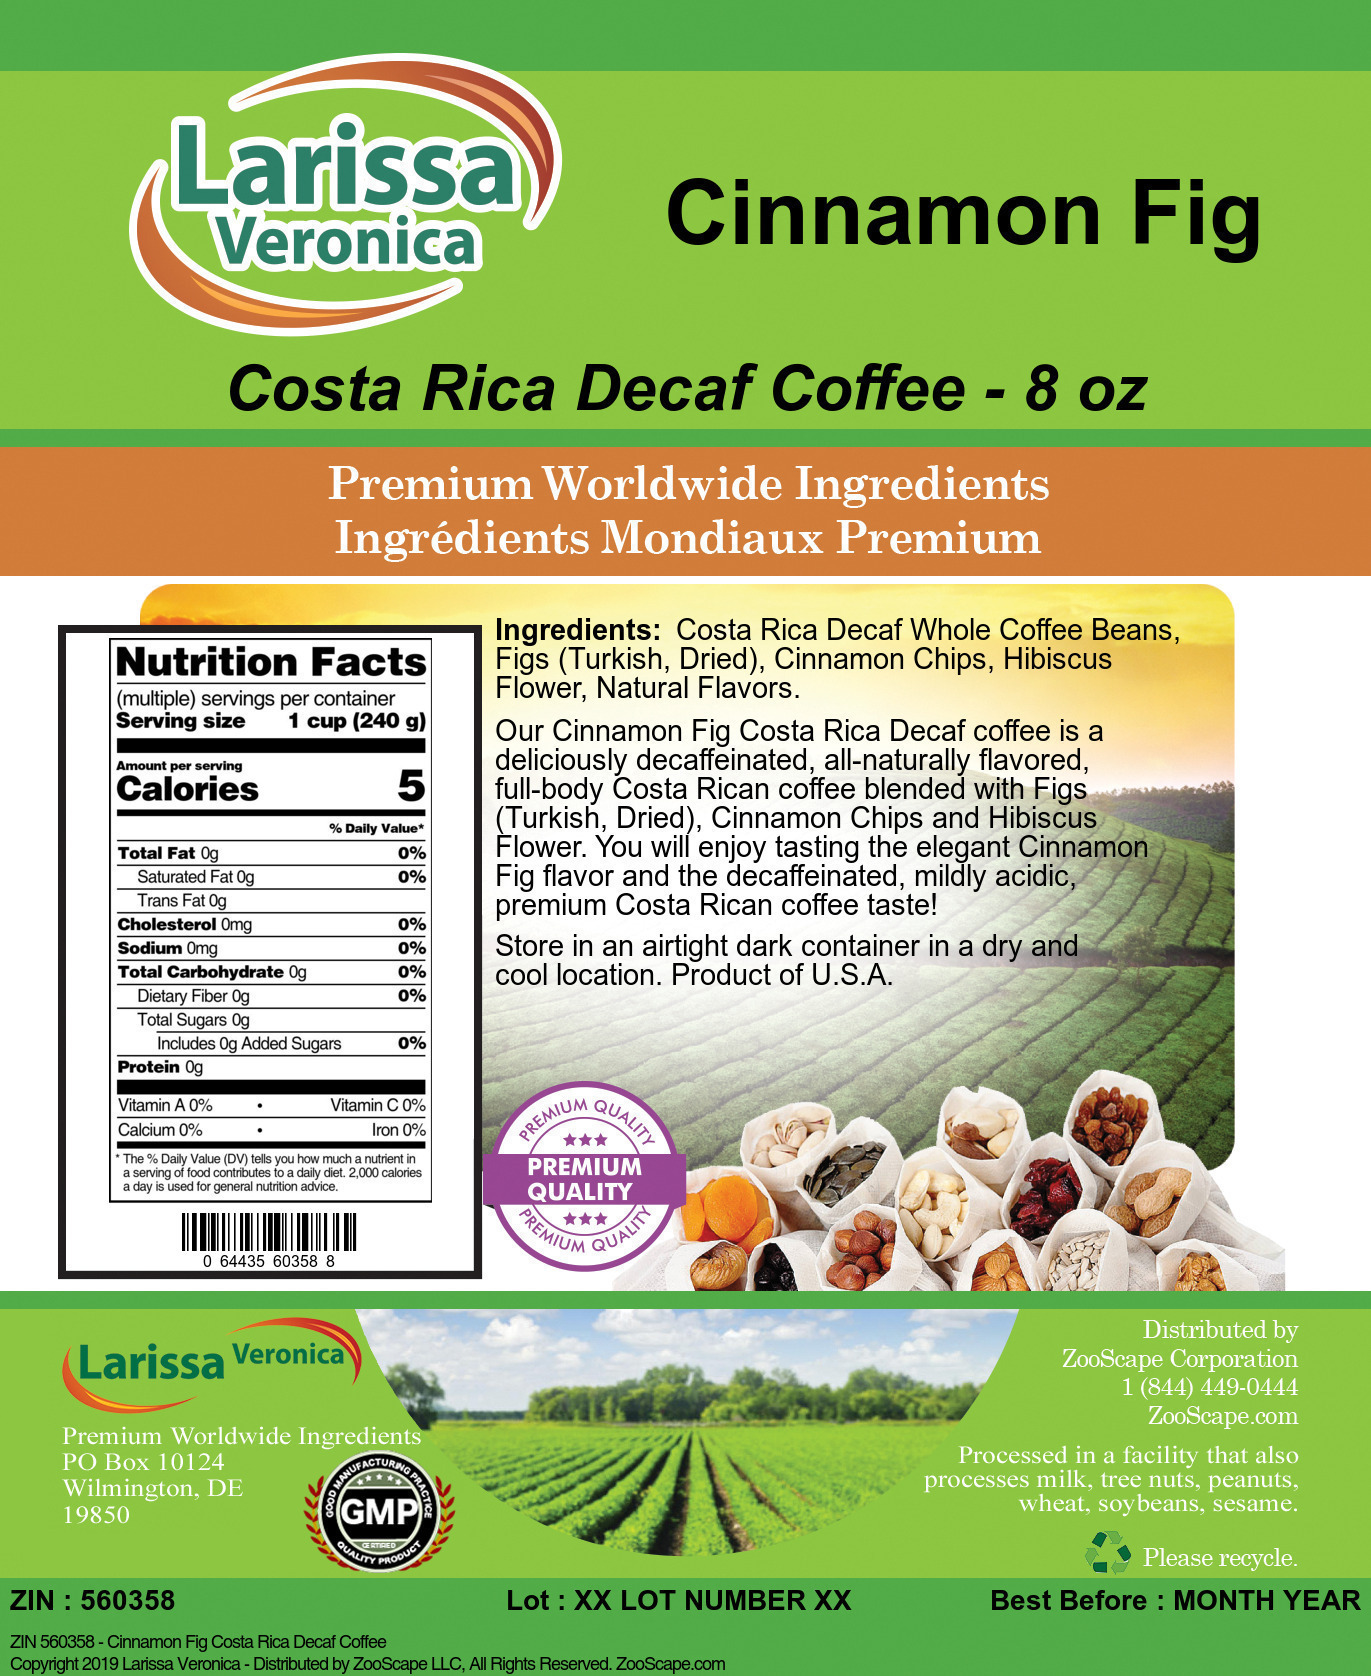 Cinnamon Fig Costa Rica Decaf Coffee - Label